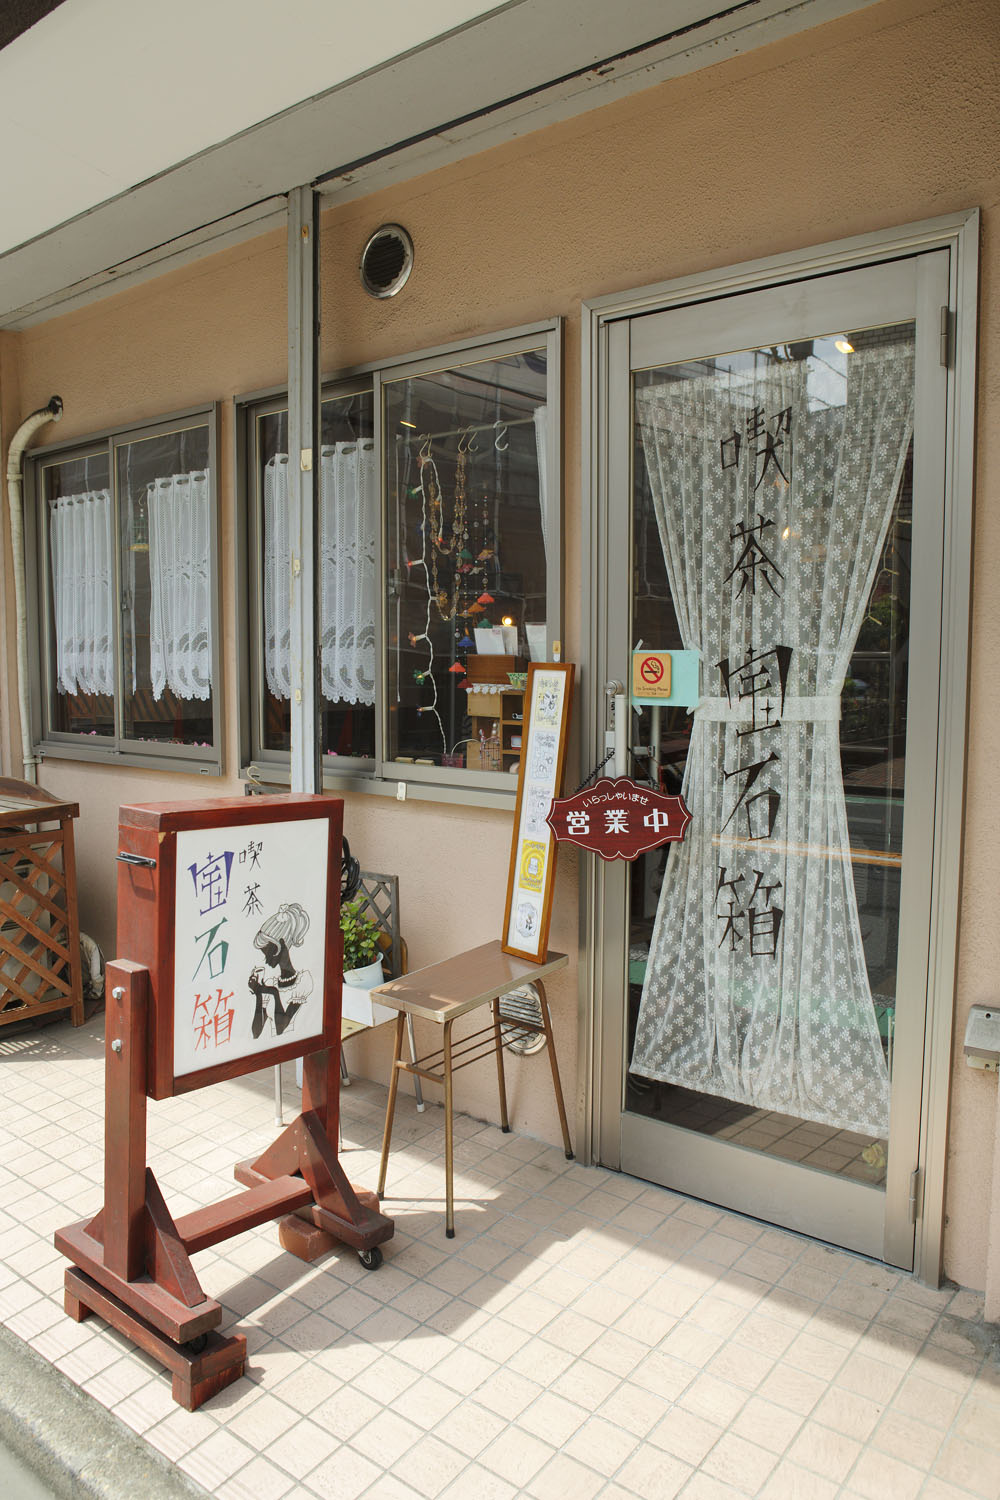 昭和風情の街並みになじむ店構え。